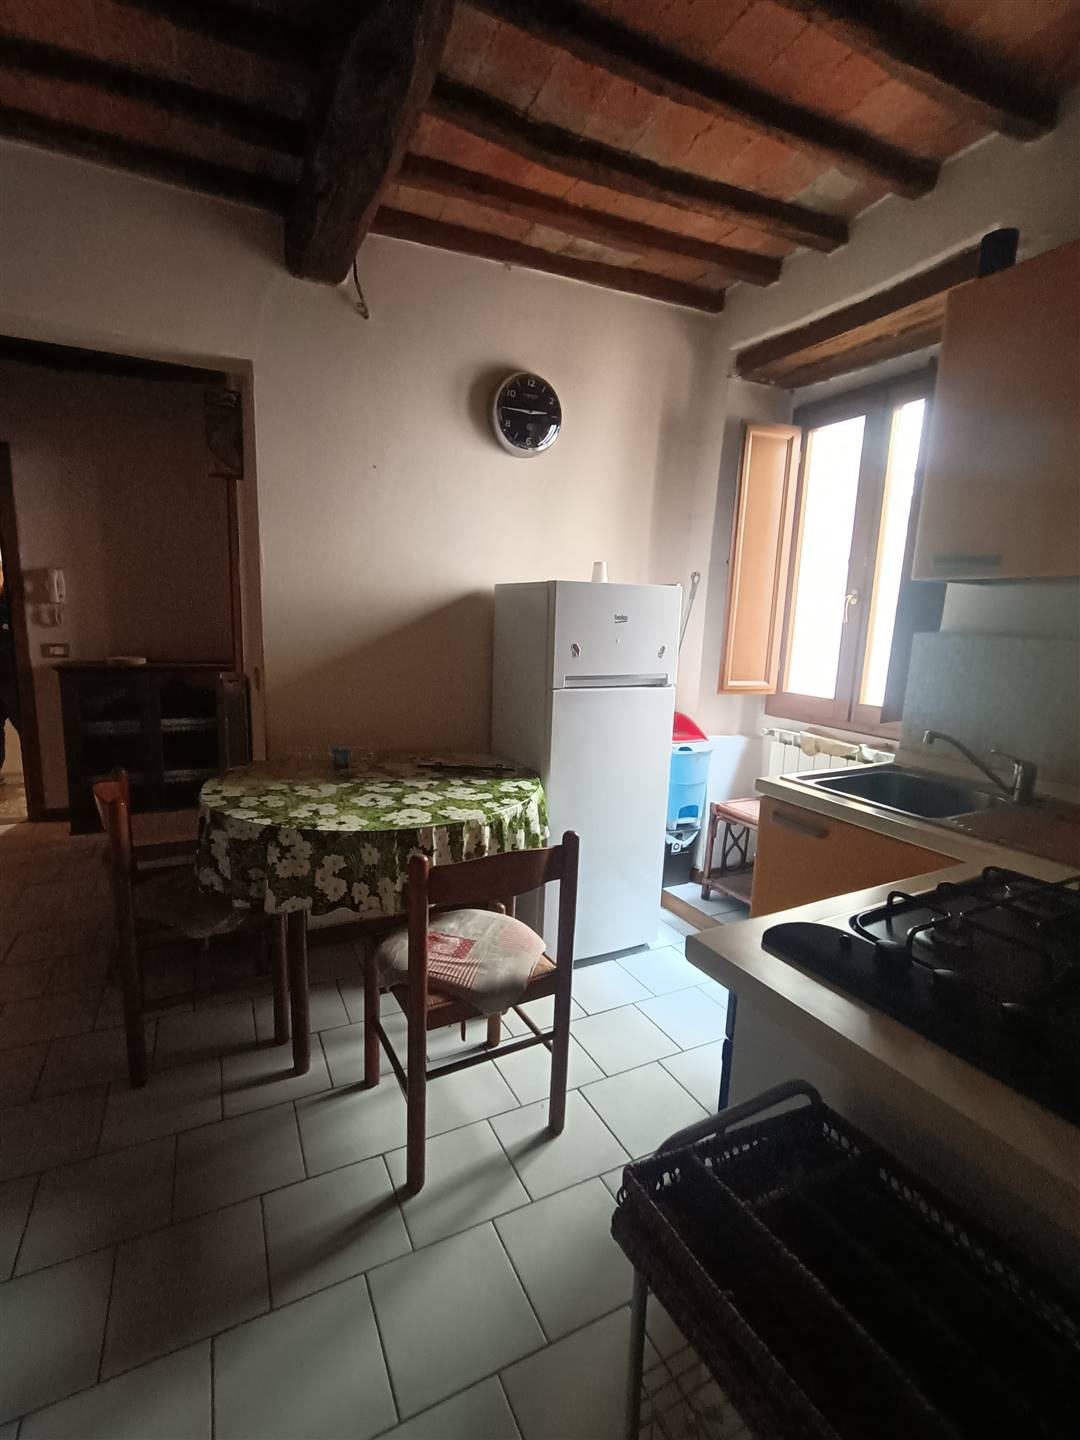 Appartamento in vendita a Castelfranco Piandiscò, 2 locali, zona Località: FAELLA, prezzo € 80.000 | CambioCasa.it